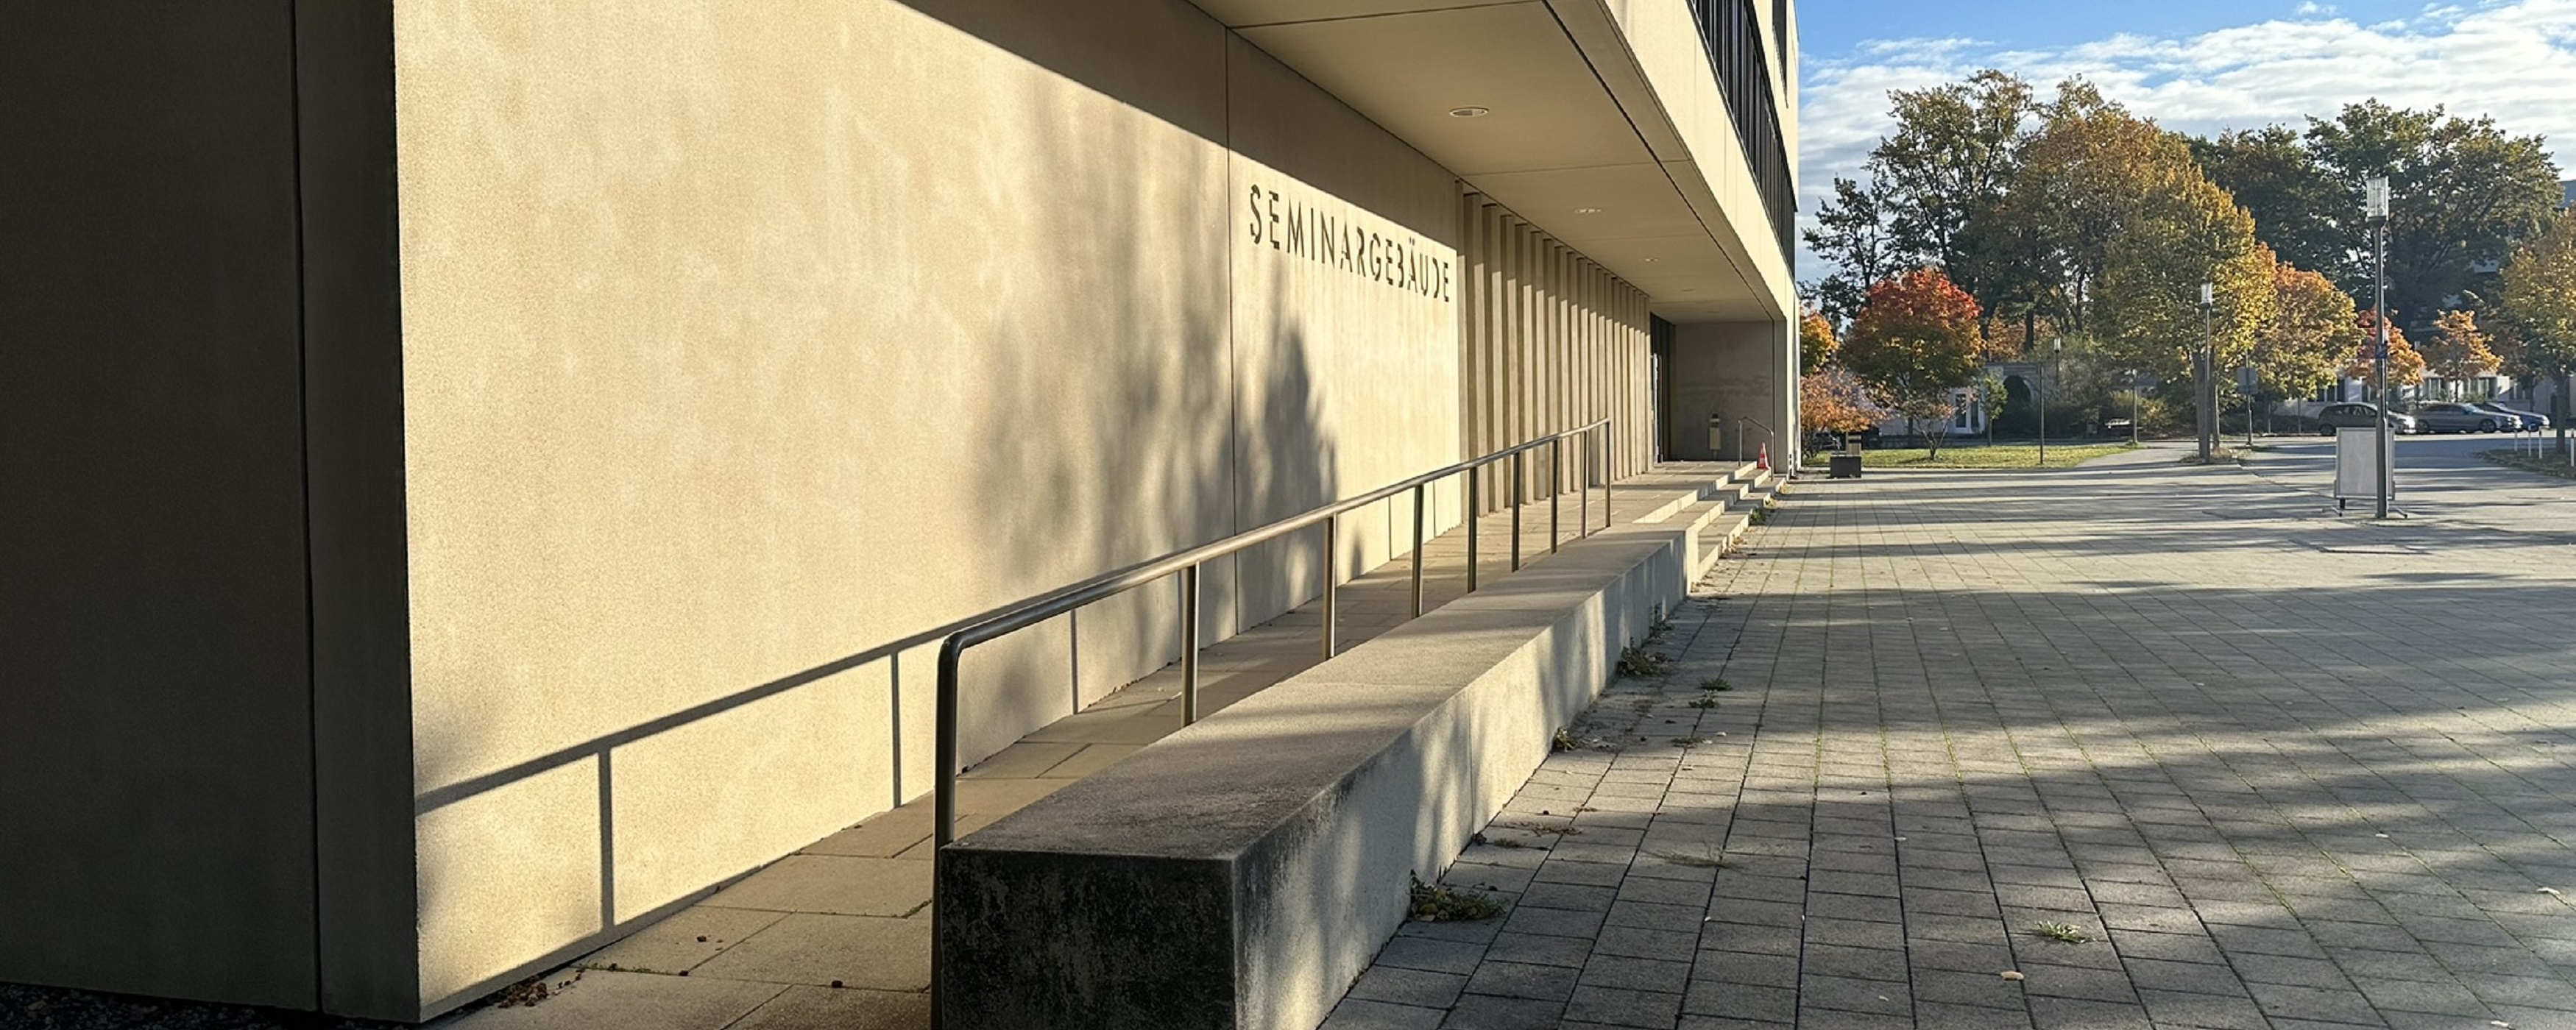 Bild: Rampe vor dem Eingang zum Seminargebäude